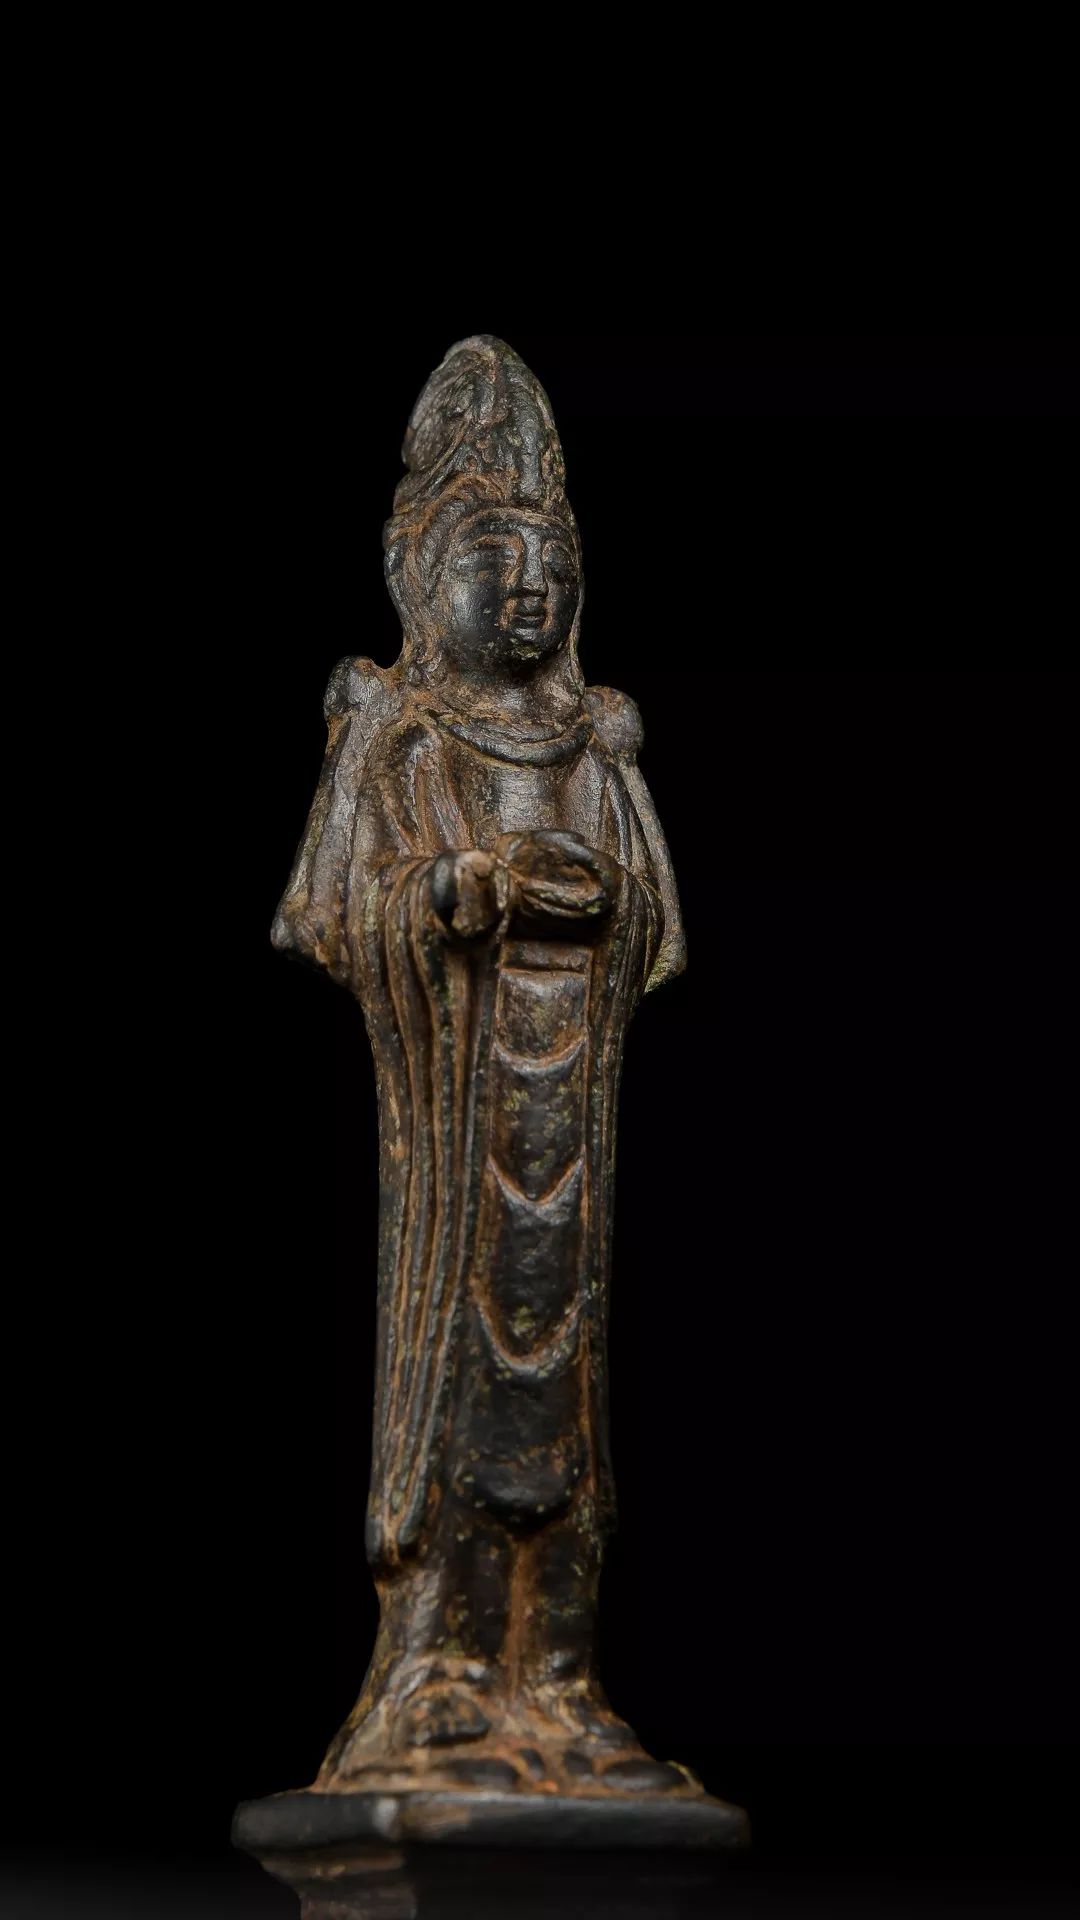 3cm若在辽代金铜佛像间多进行对比,便可发现辽代佛像面目五官极为相似